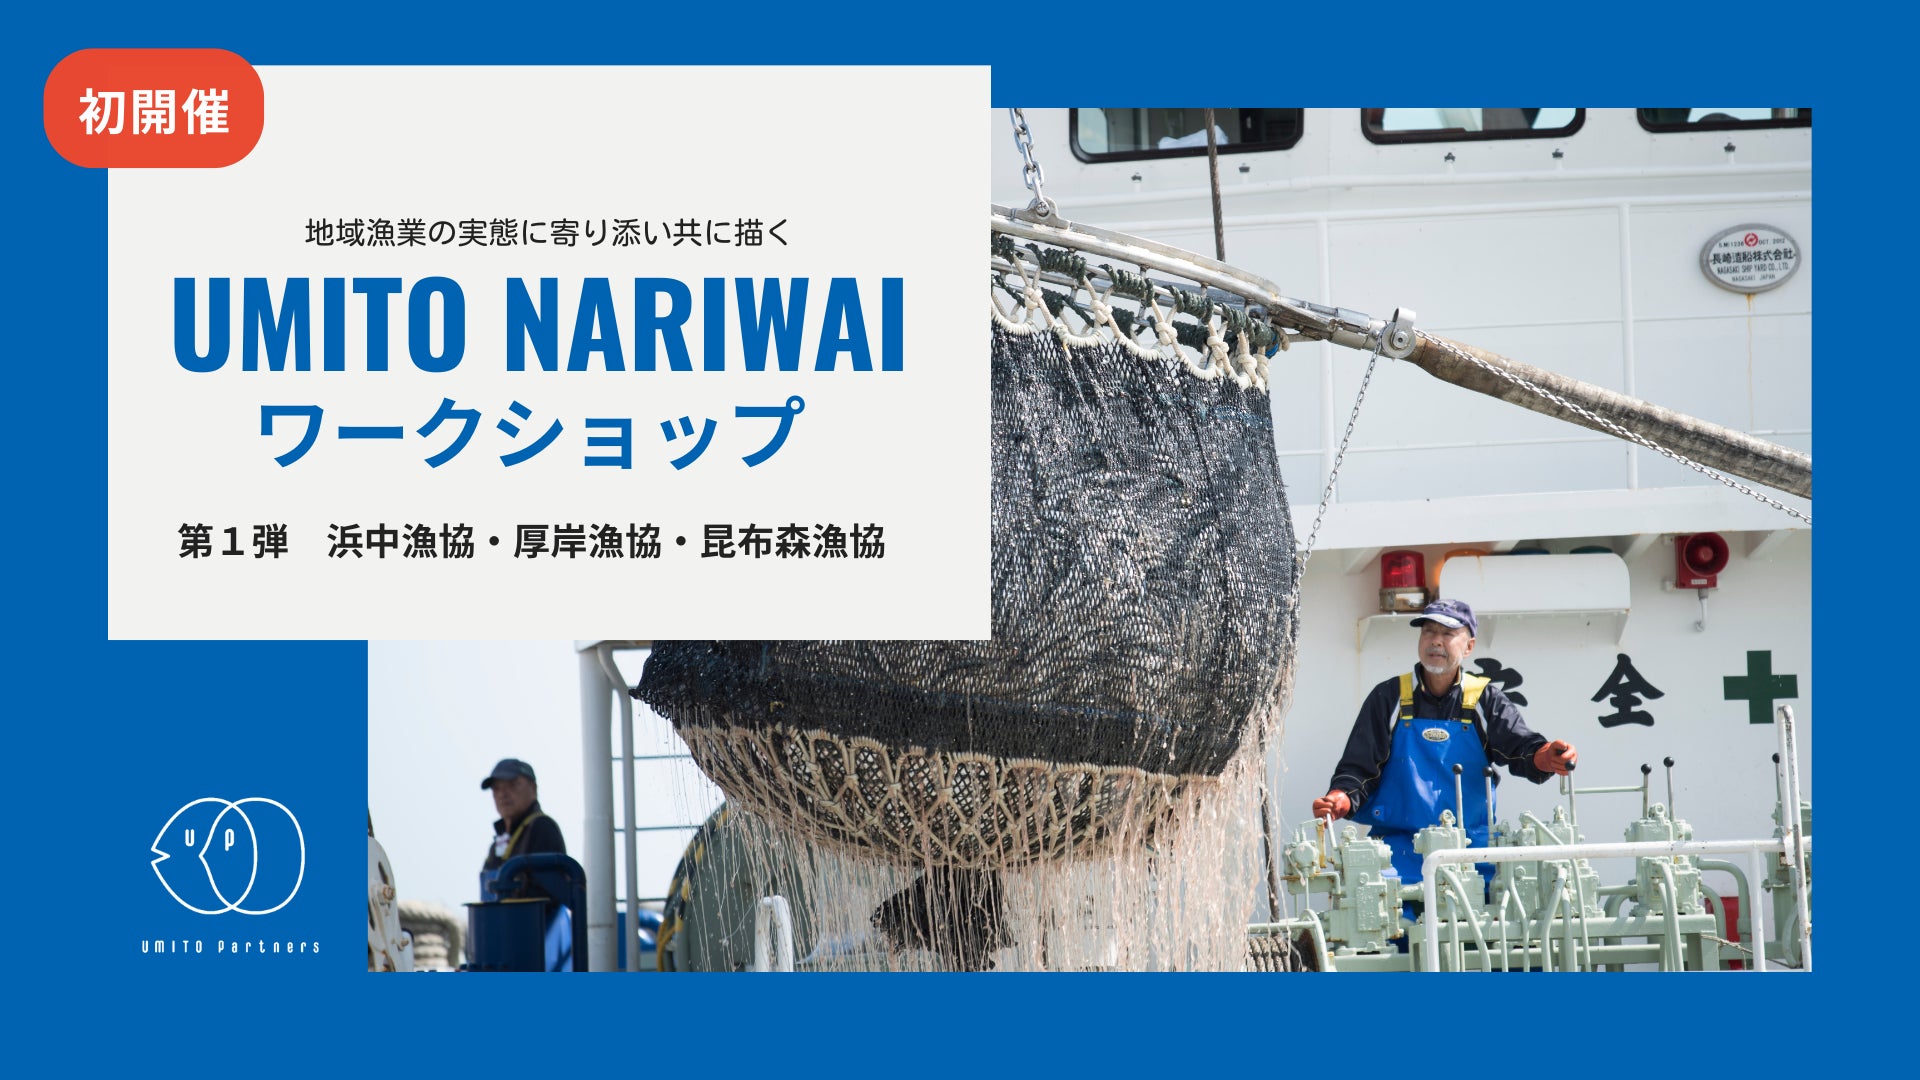 サステナブルな漁業への道筋を、地域漁業の実態に寄り添い共に描く「UMITO NARIWAI ワークショップ」第1弾のサブ画像1